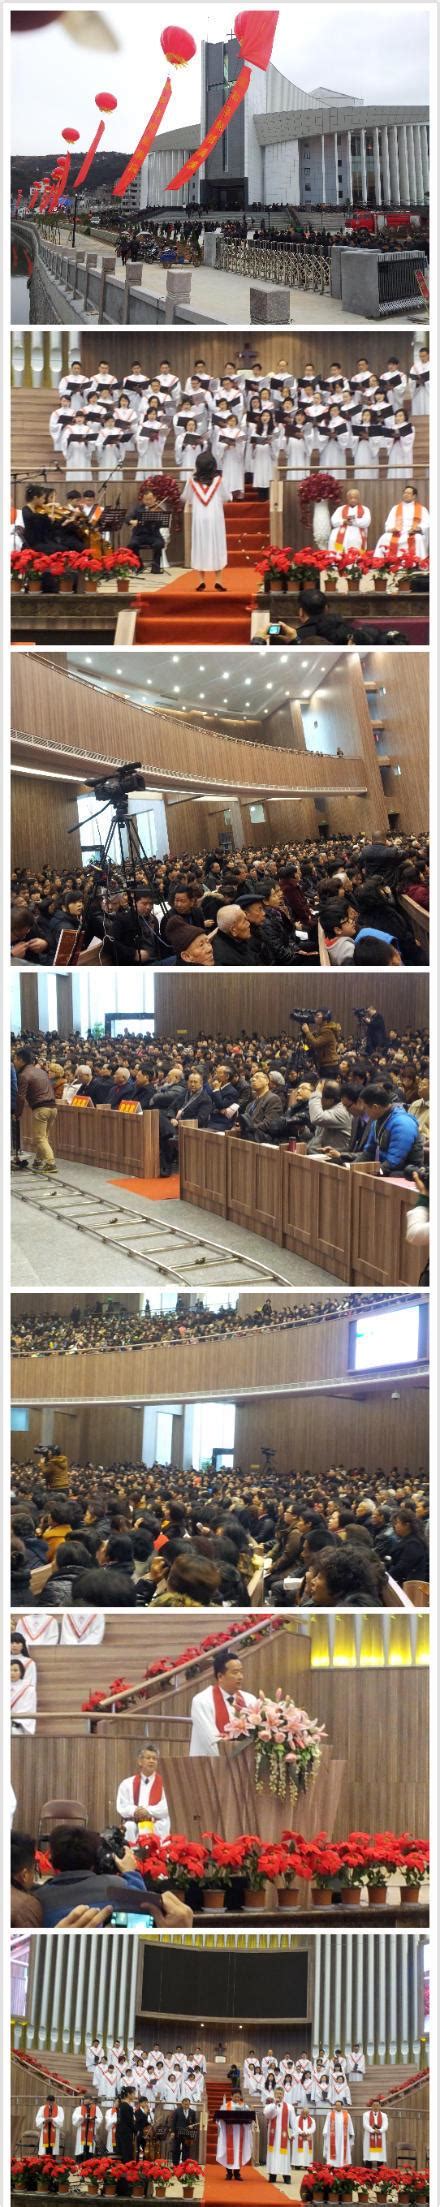 （最新）温州柳市大教堂献堂实况直播中 将成中国目前最大基督教堂-基督时报-基督教资讯平台